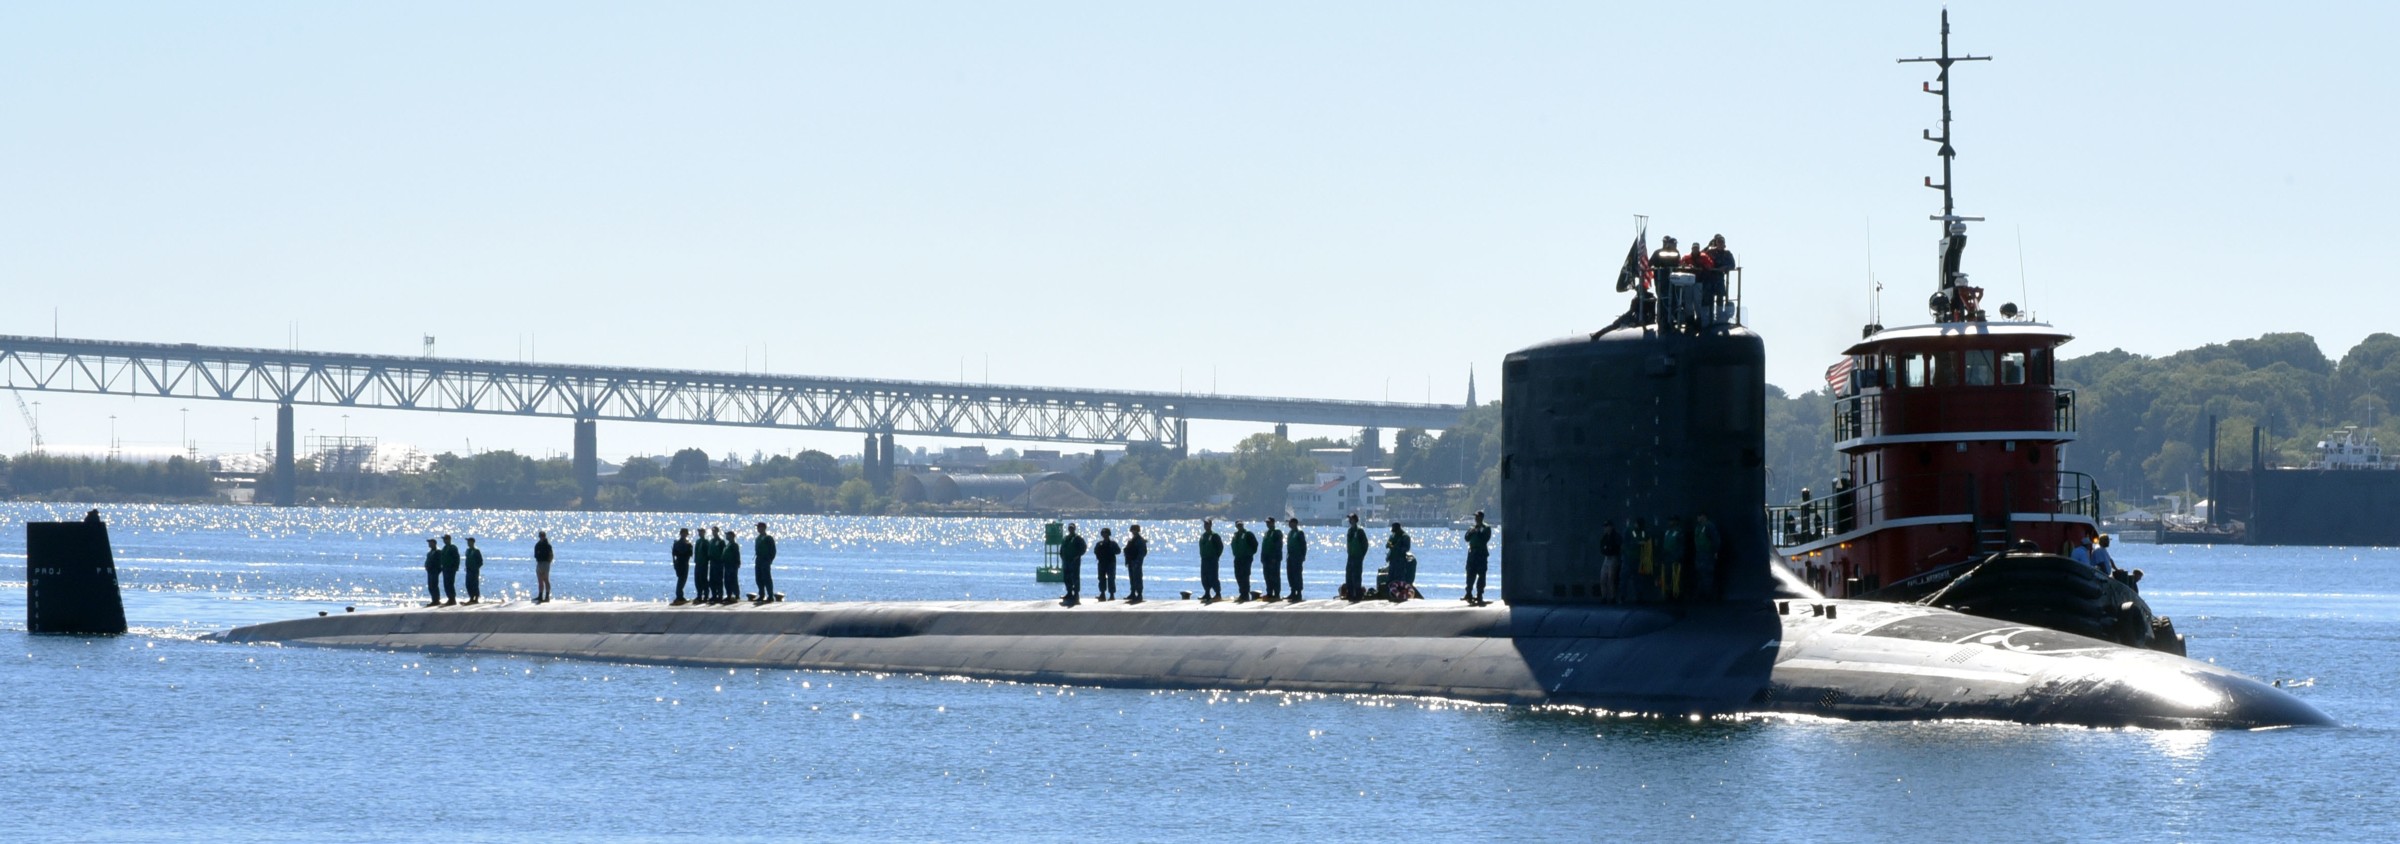 ssn-786 uss illinois virginia class attack submarine us navy 13 groton connecticut